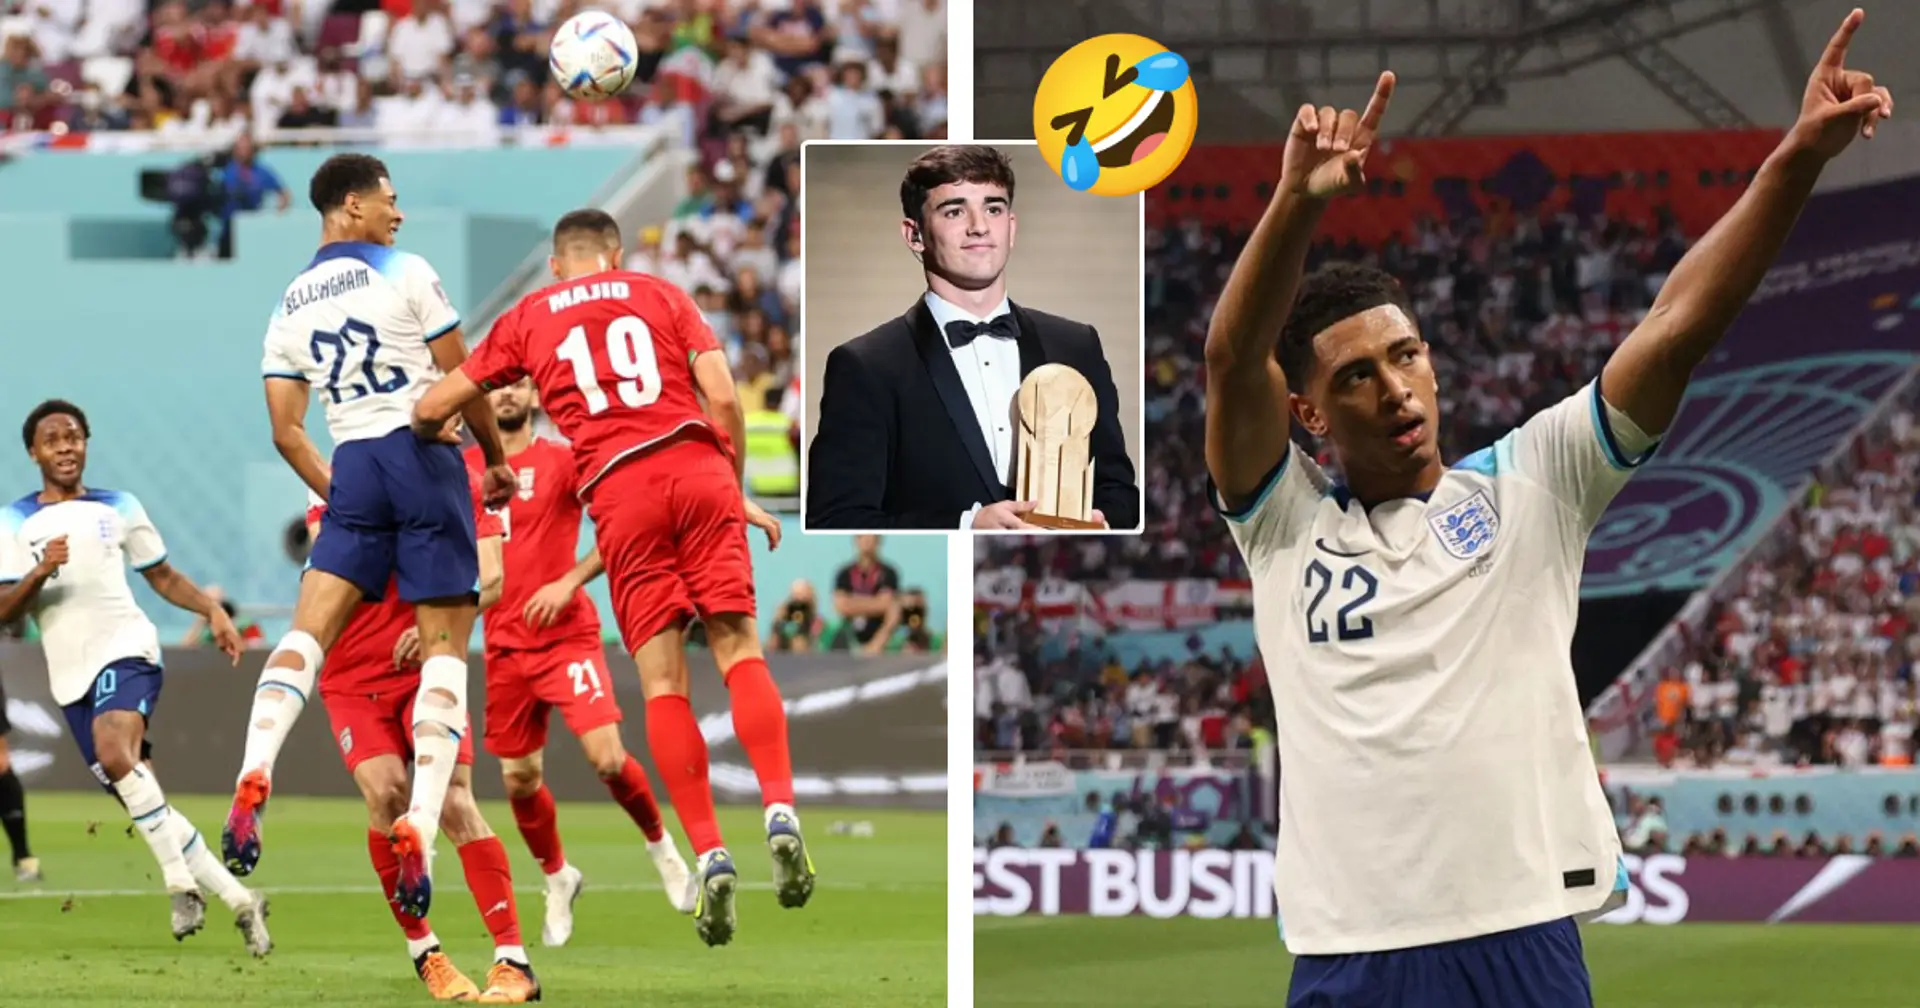 "Wer ist Gavi?": BVB-Fans freuen sich über Bellinghams WM-Debüttor